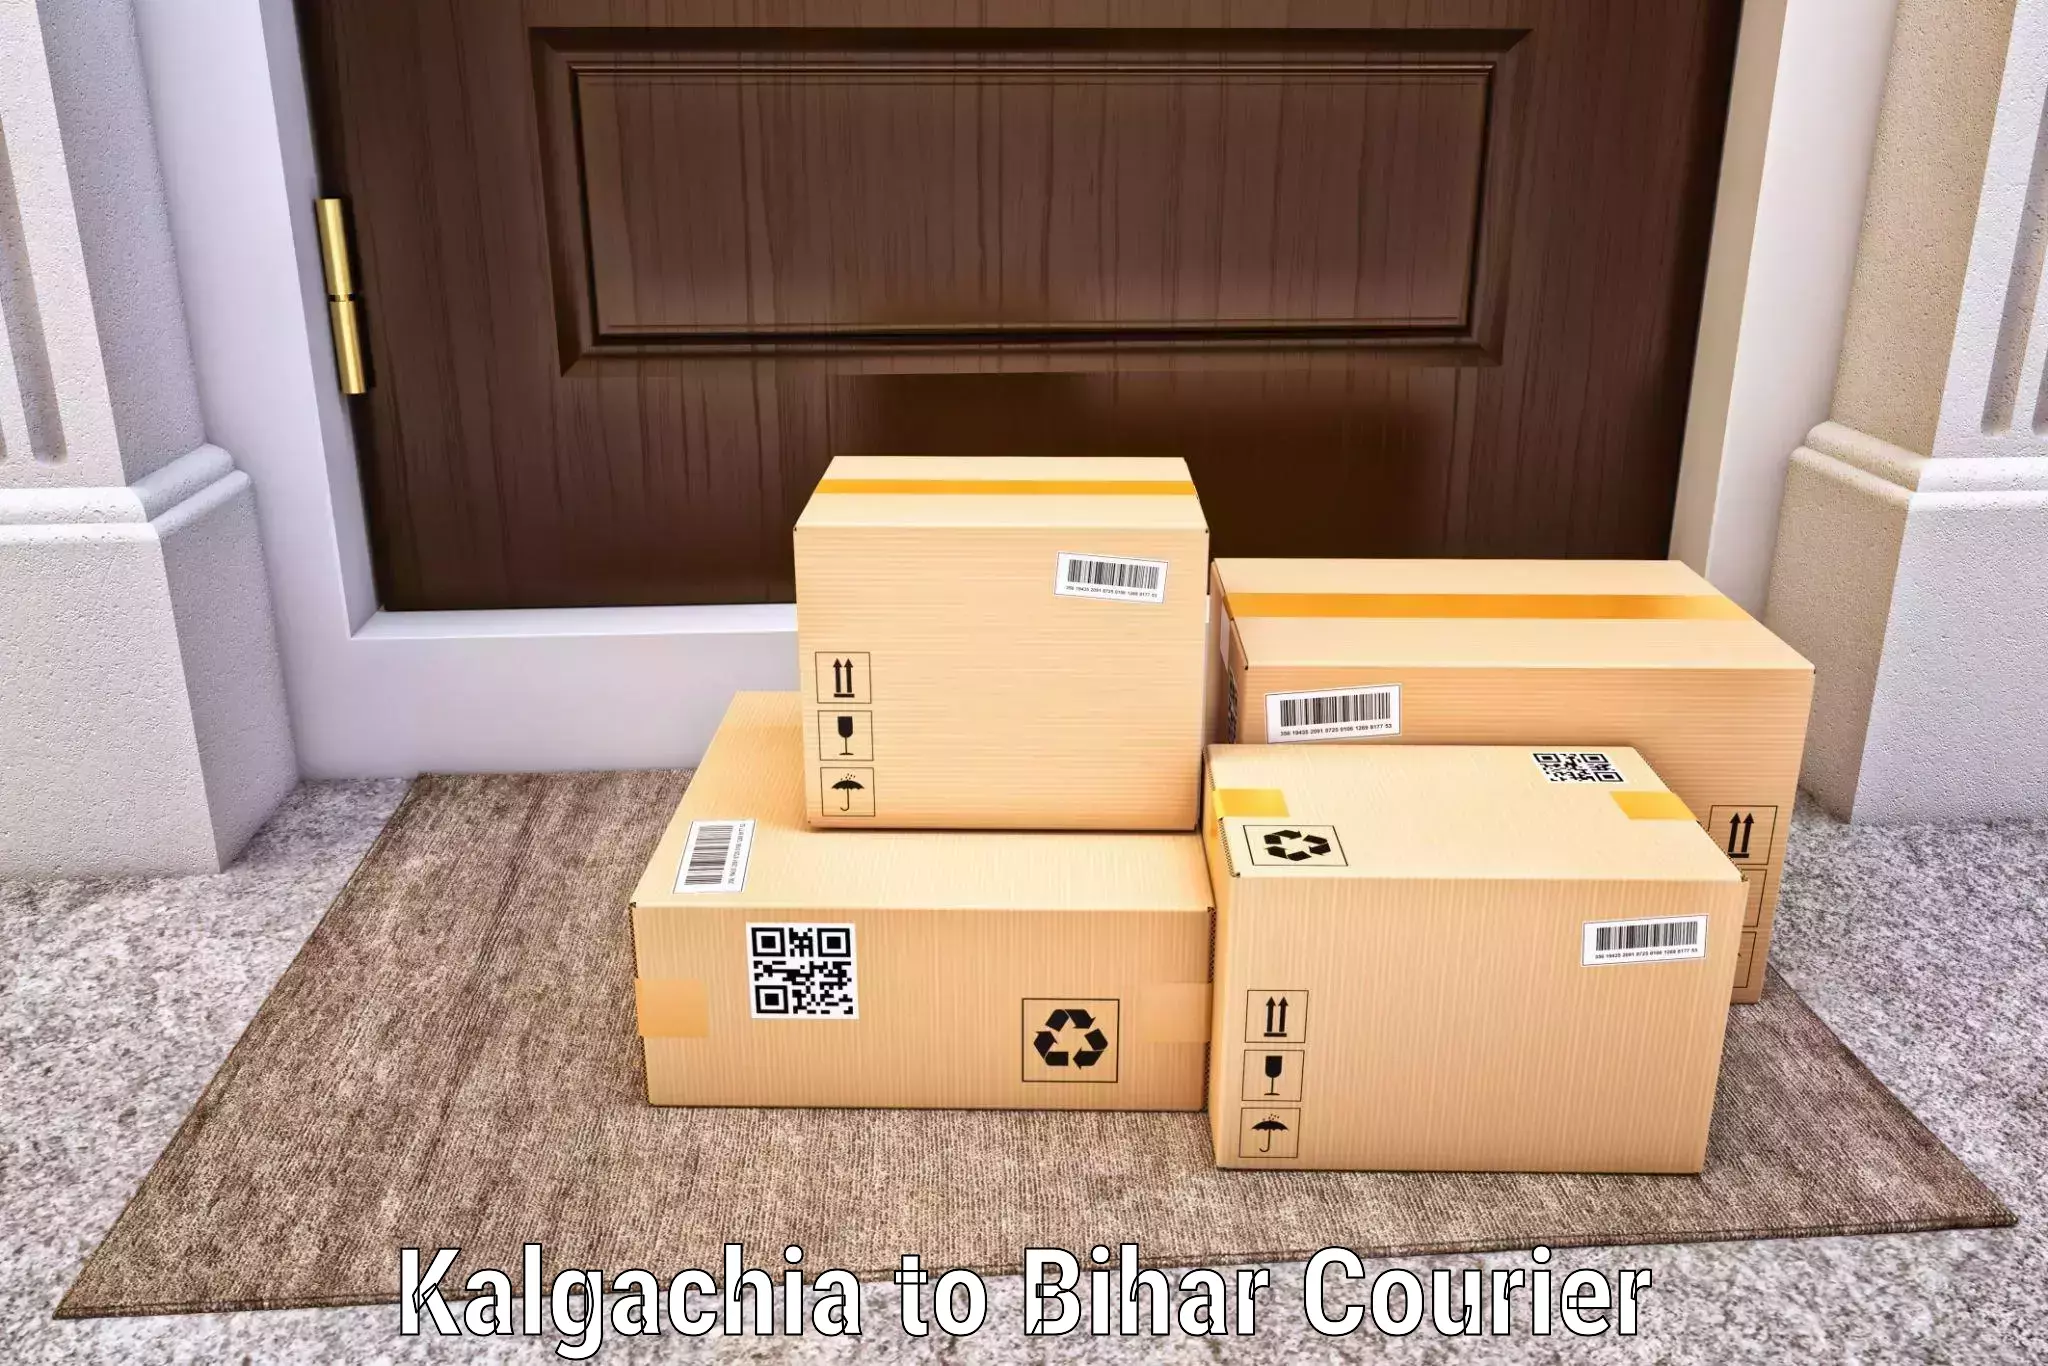 Customized delivery solutions in Kalgachia to Kochas